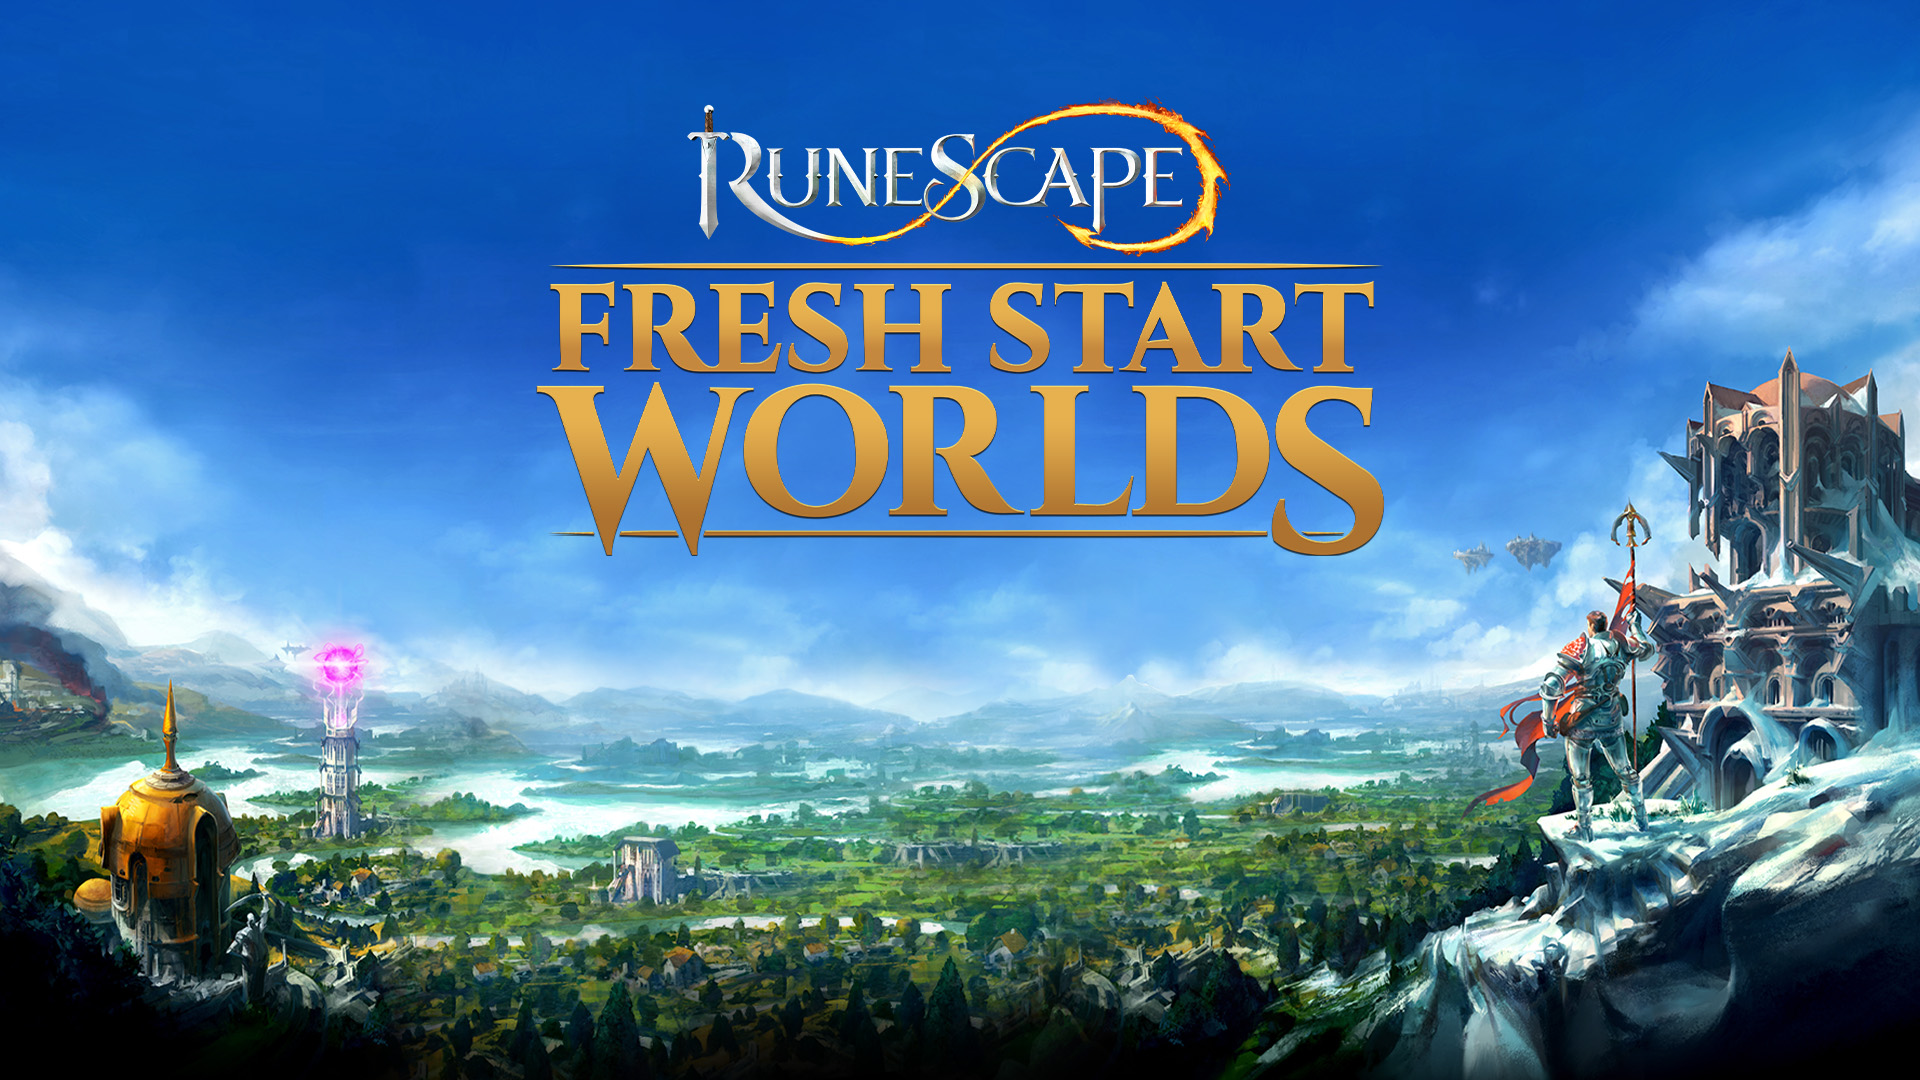 Fresh Start Worlds Begin Today in Runescape